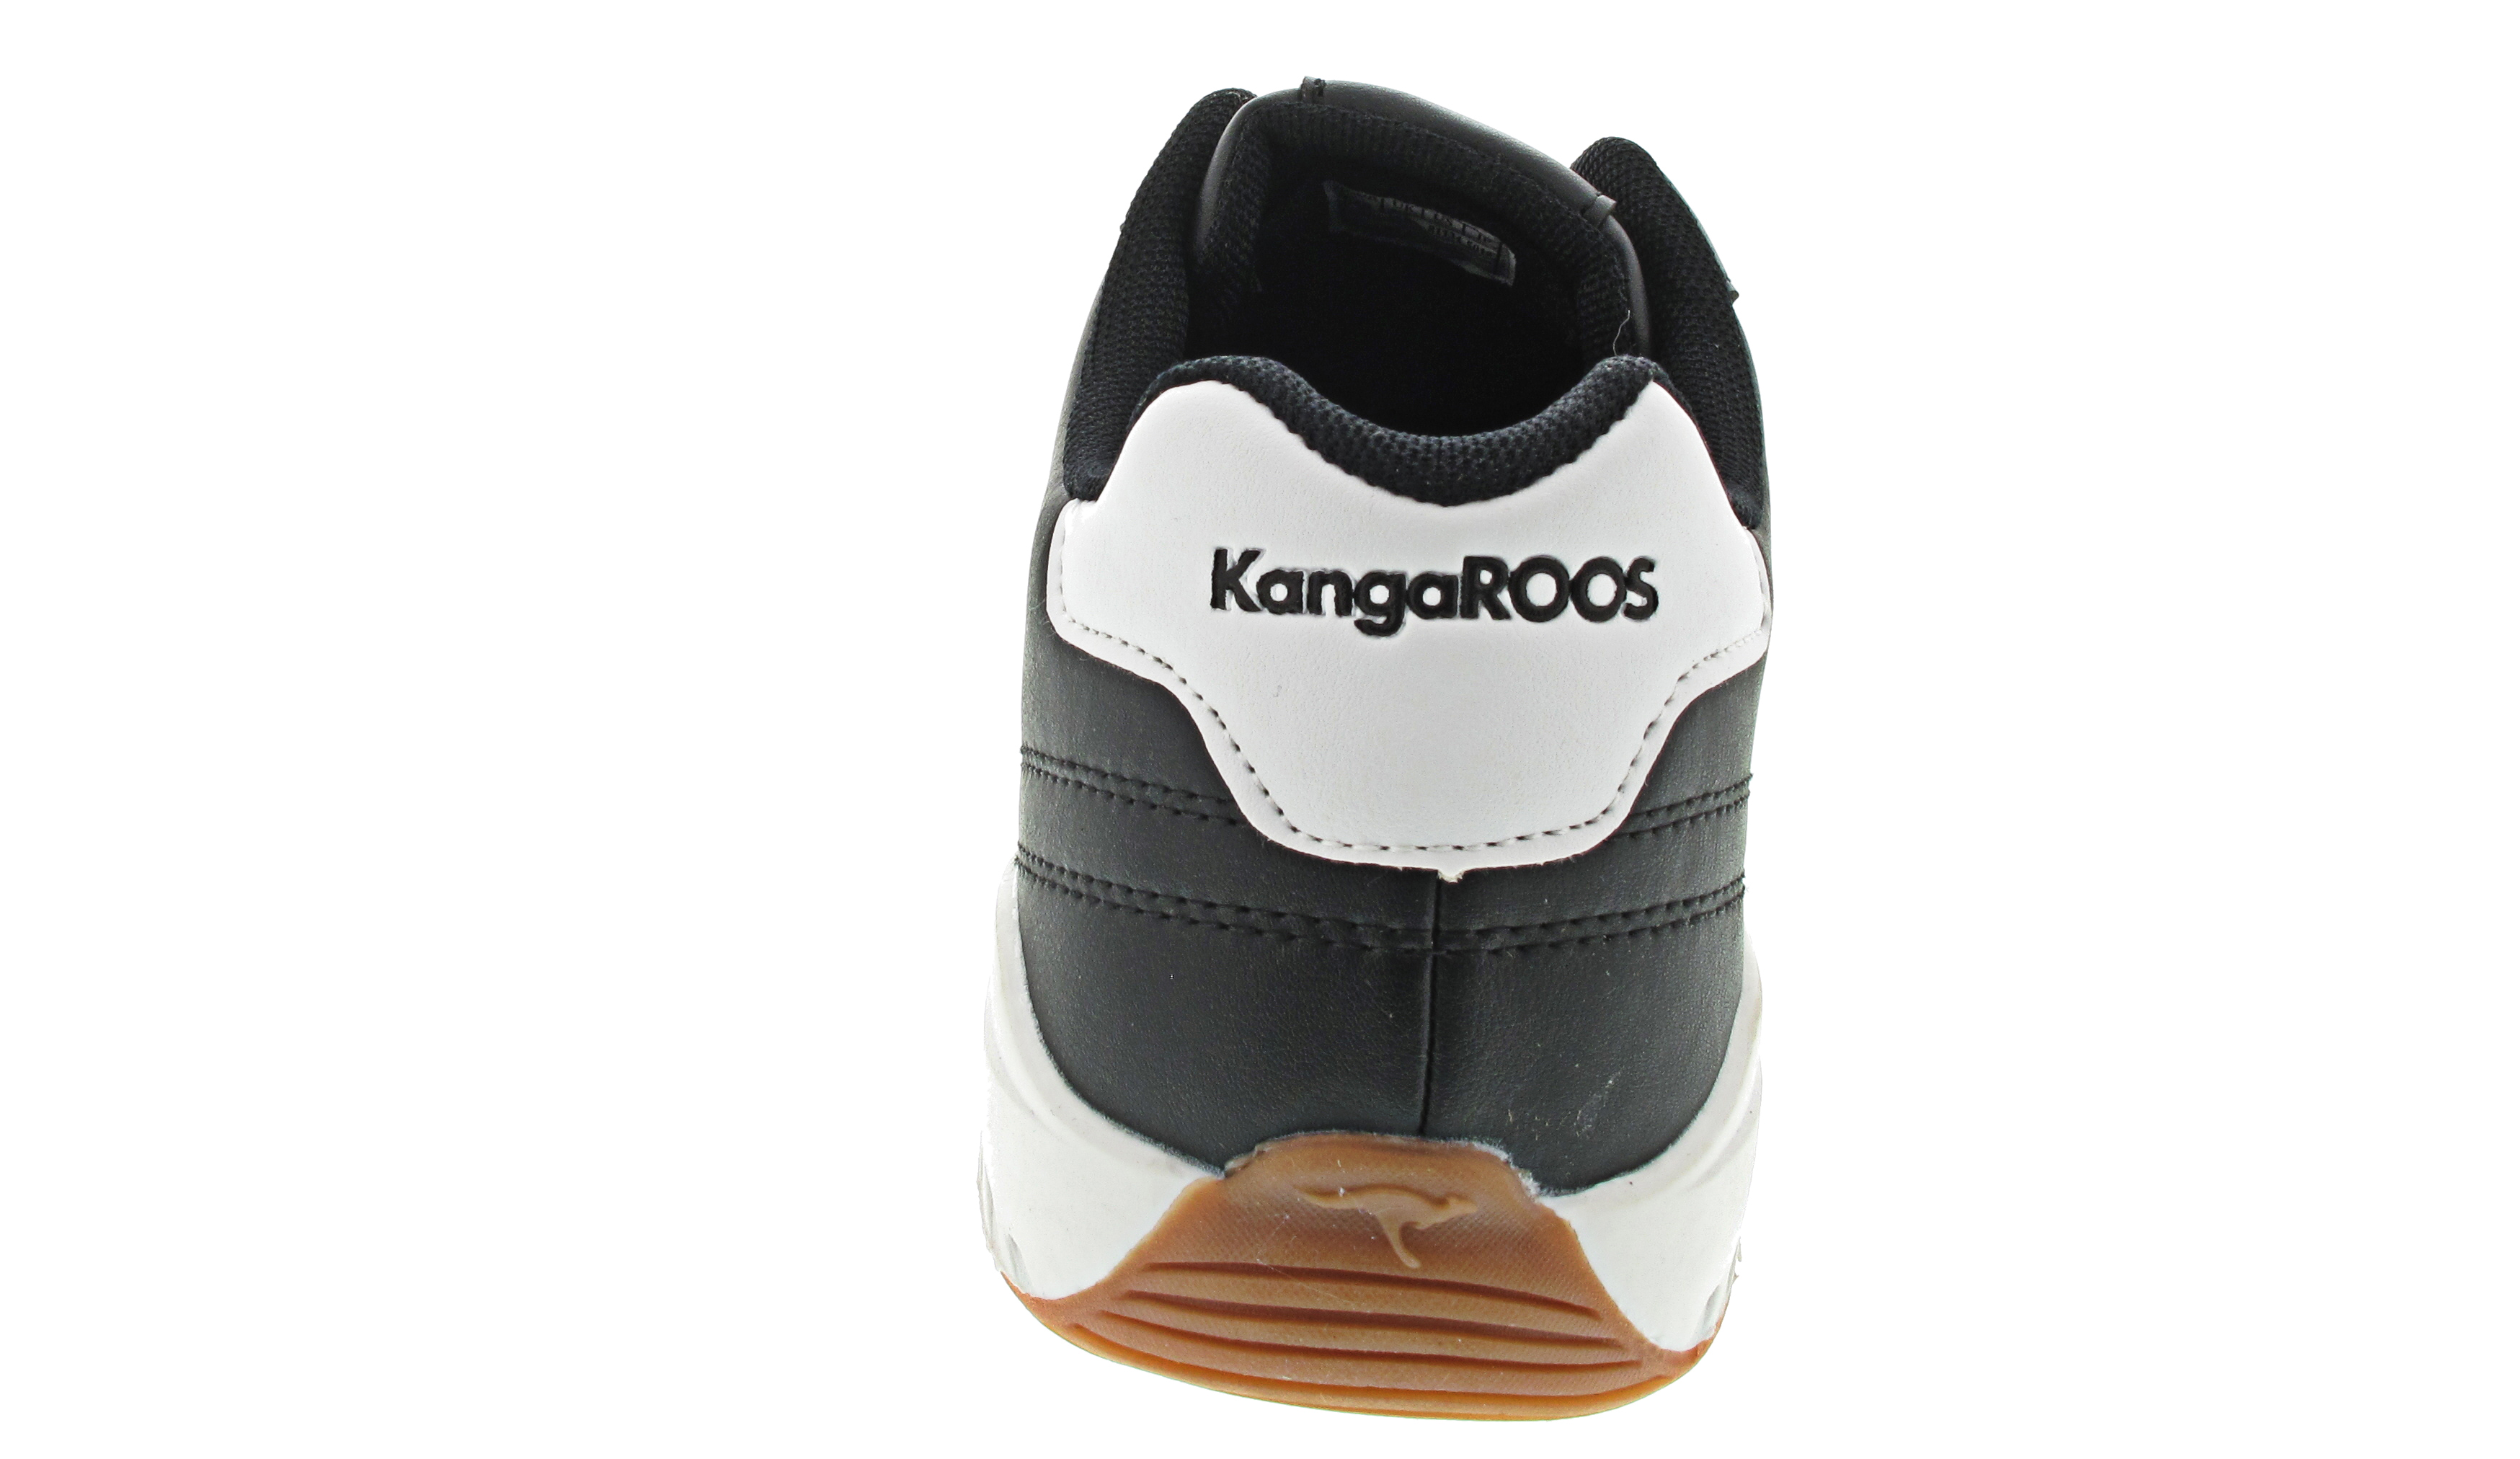 Kanga Roos K-Yard Pro 5